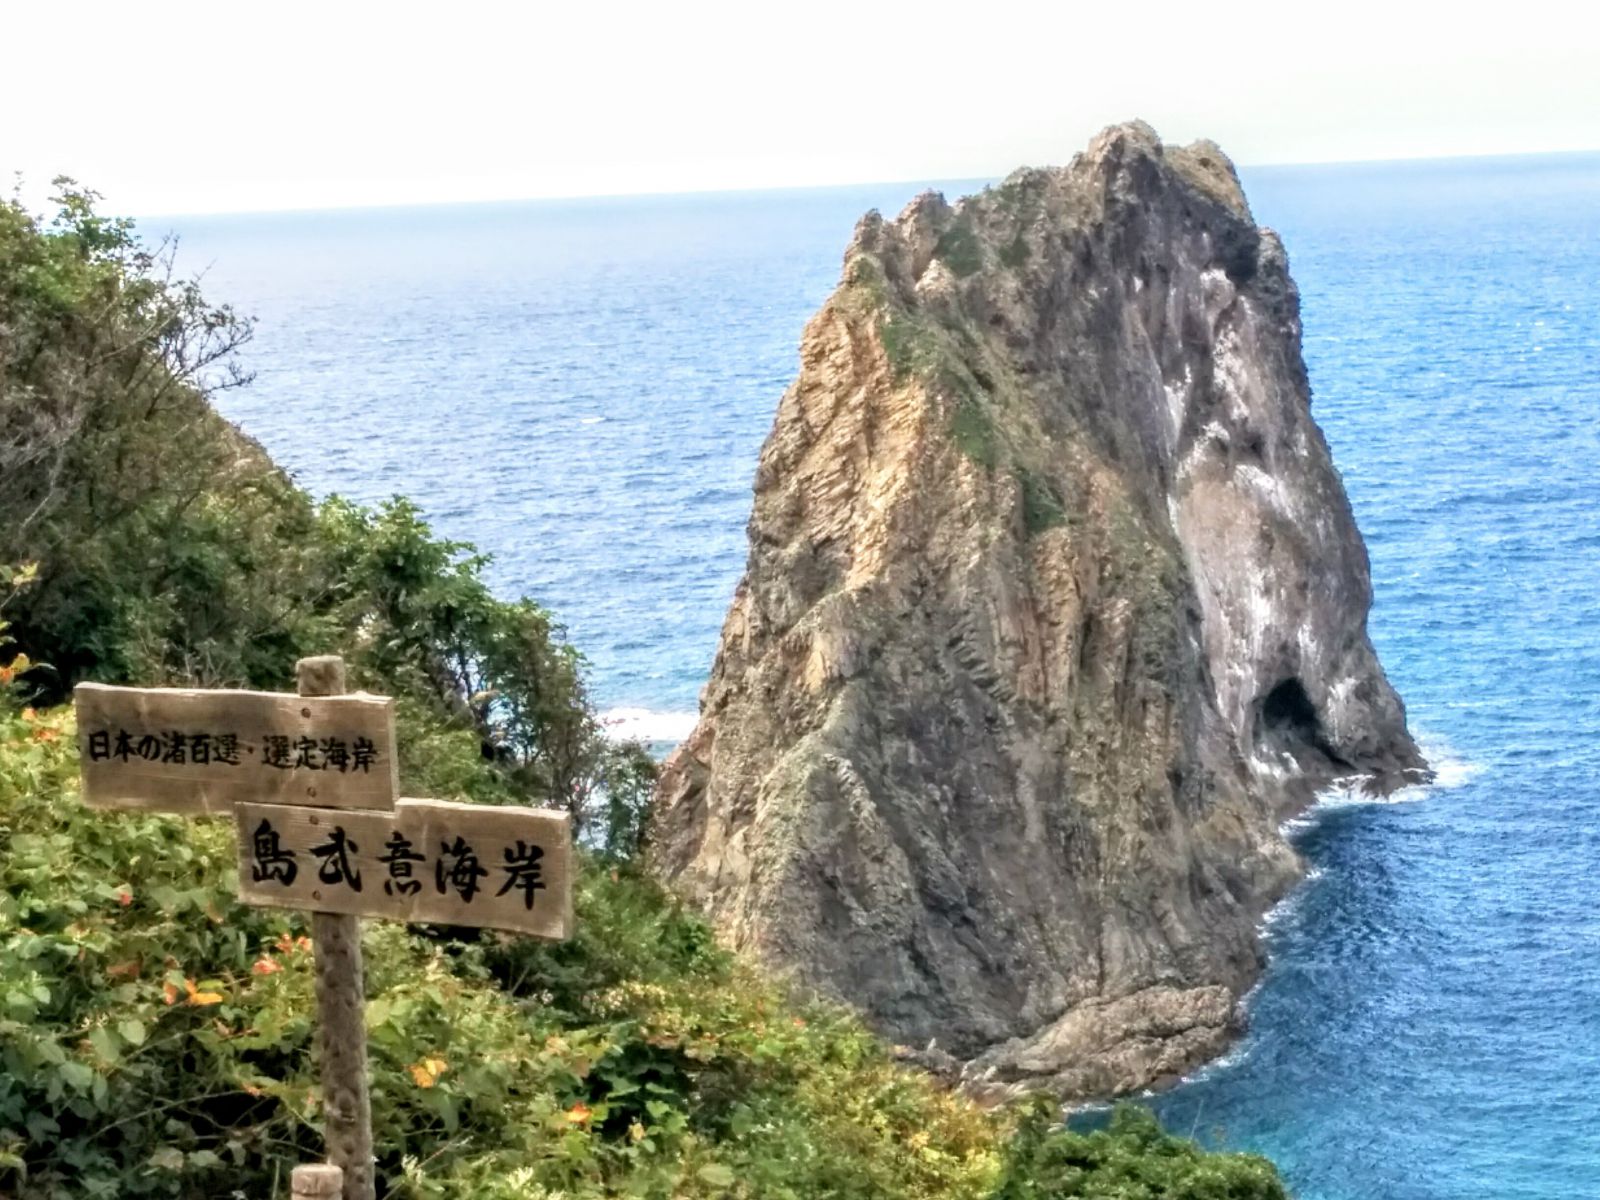 積丹ブルーの海と日本の渚百選・島武意海岸です。